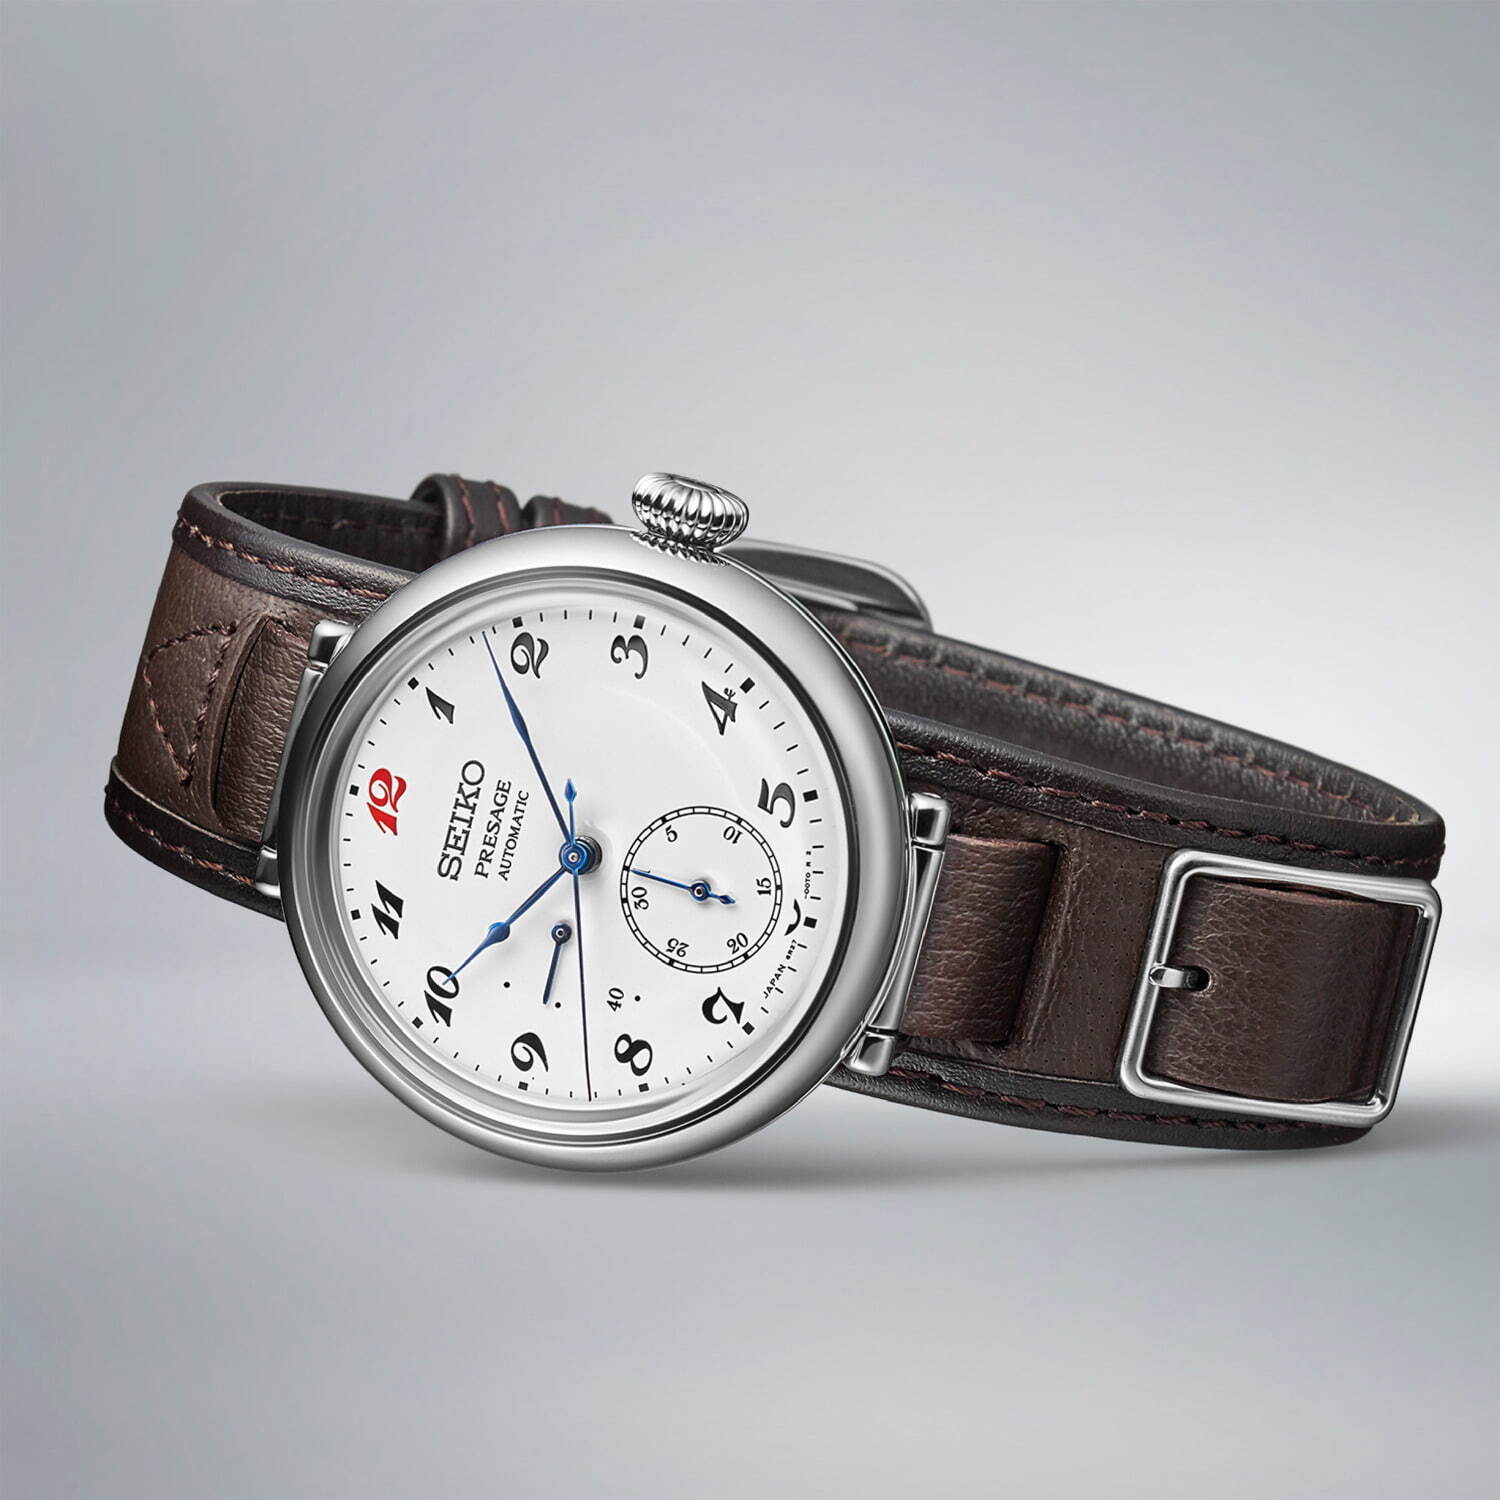 ＜セイコー プレザージュ＞クラフツマンシップシリーズ
セイコー腕時計 110周年記念限定モデル
220,000円